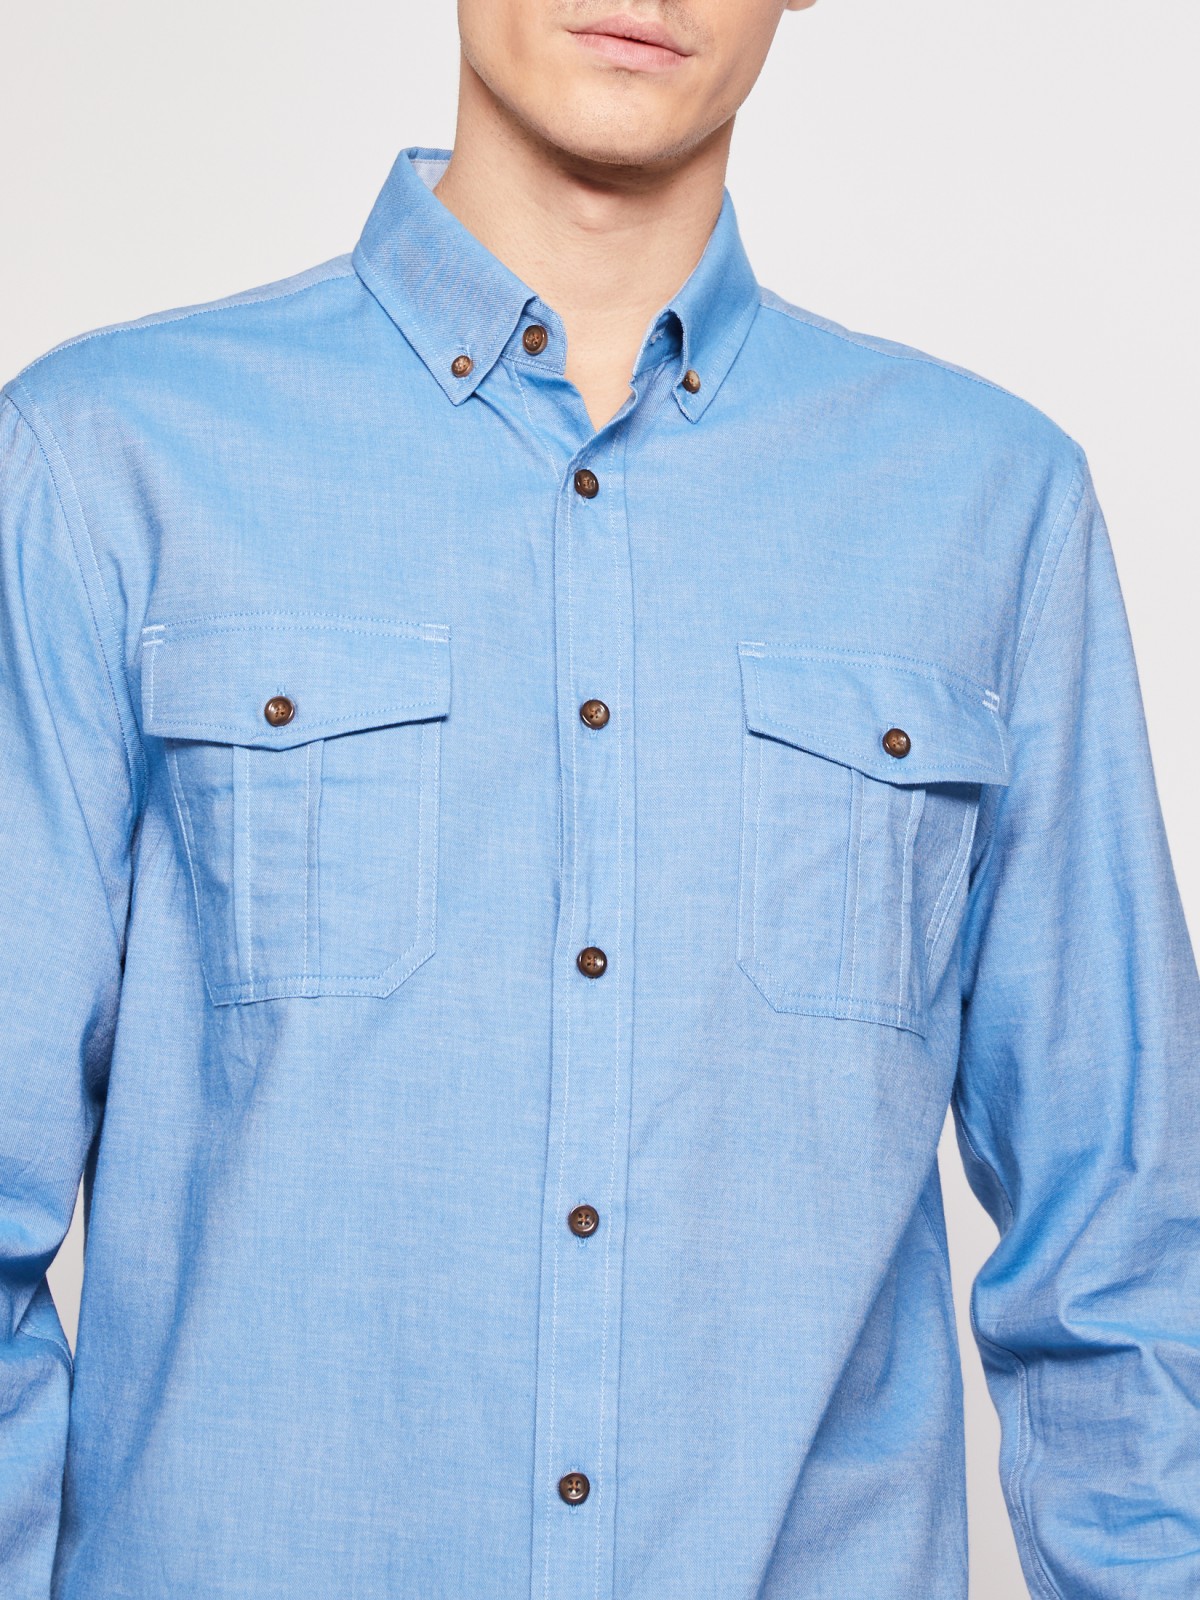 Хлопковая рубашка с длинным рукавом zolla 012122159063, цвет голубой, размер M - фото 4